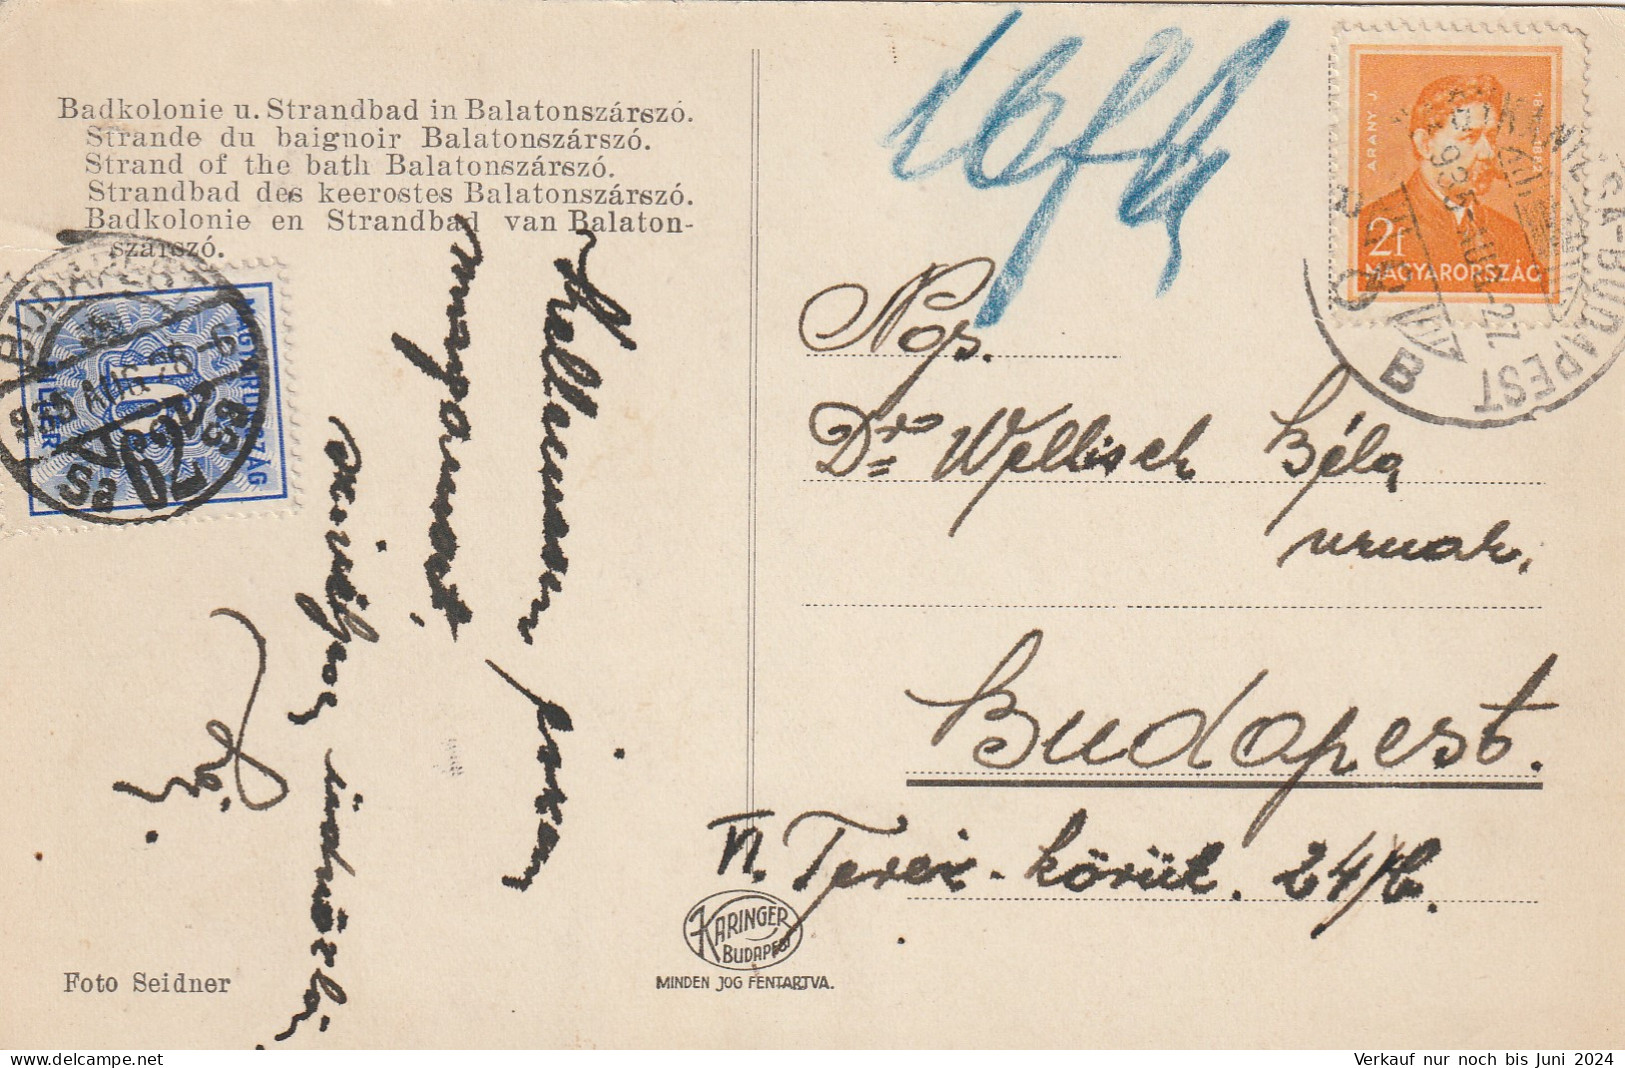 13 Briefe / Karten aus Ungarn mit Bahnpoststempeln (BP001)